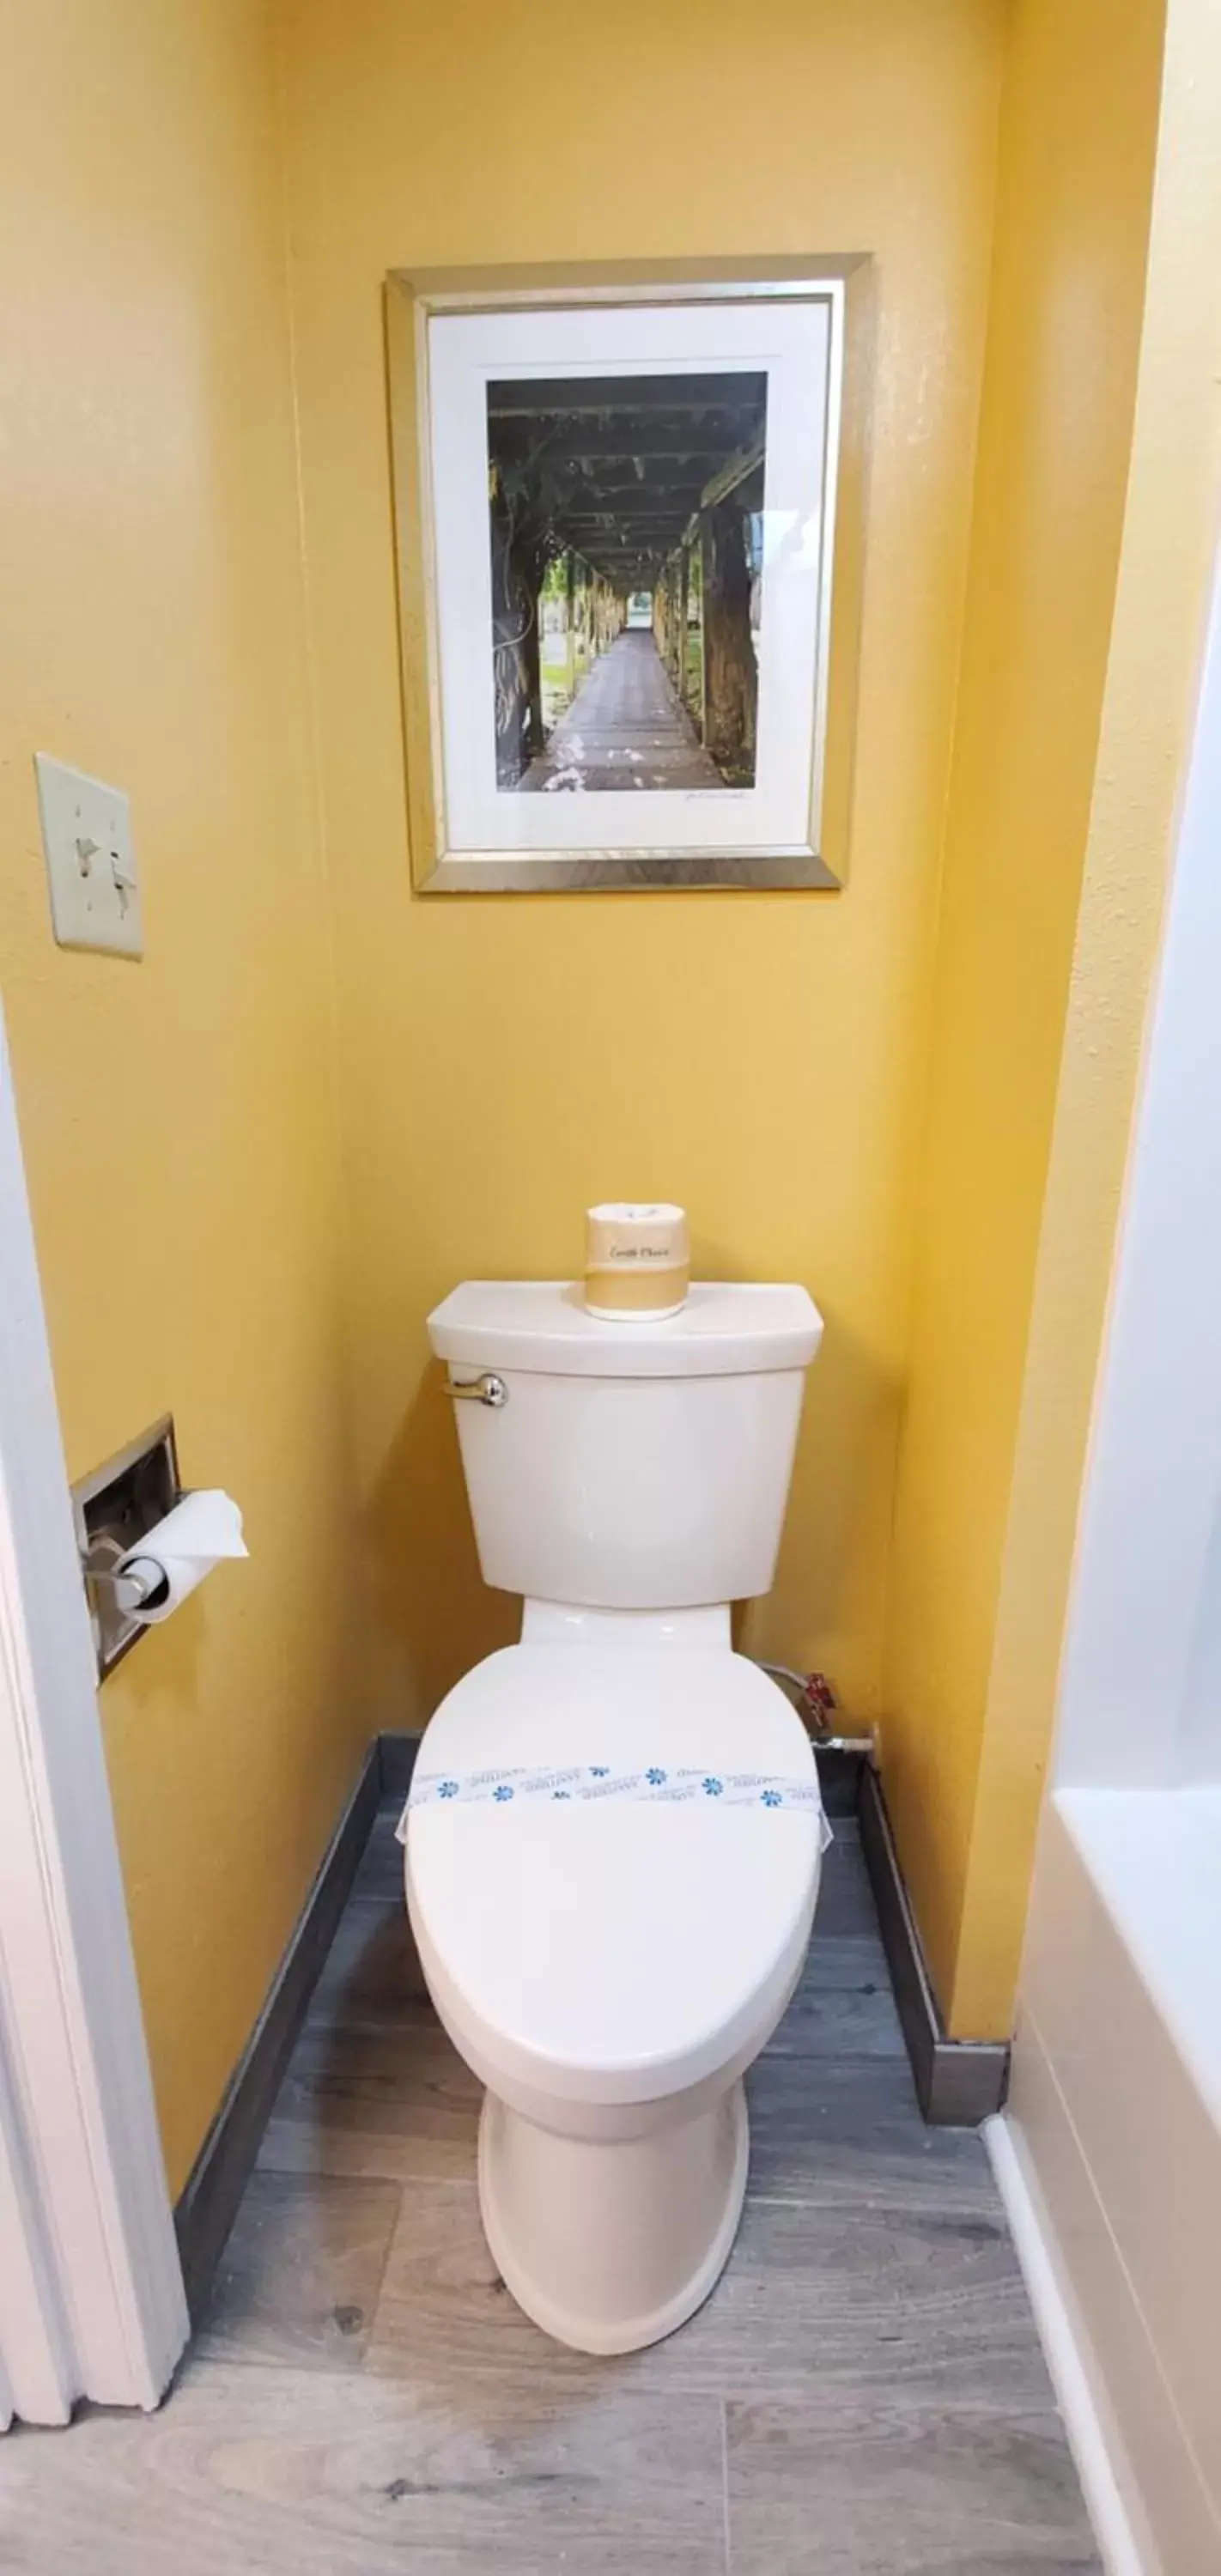 Toilet, Bathroom in Apple Inn Motel